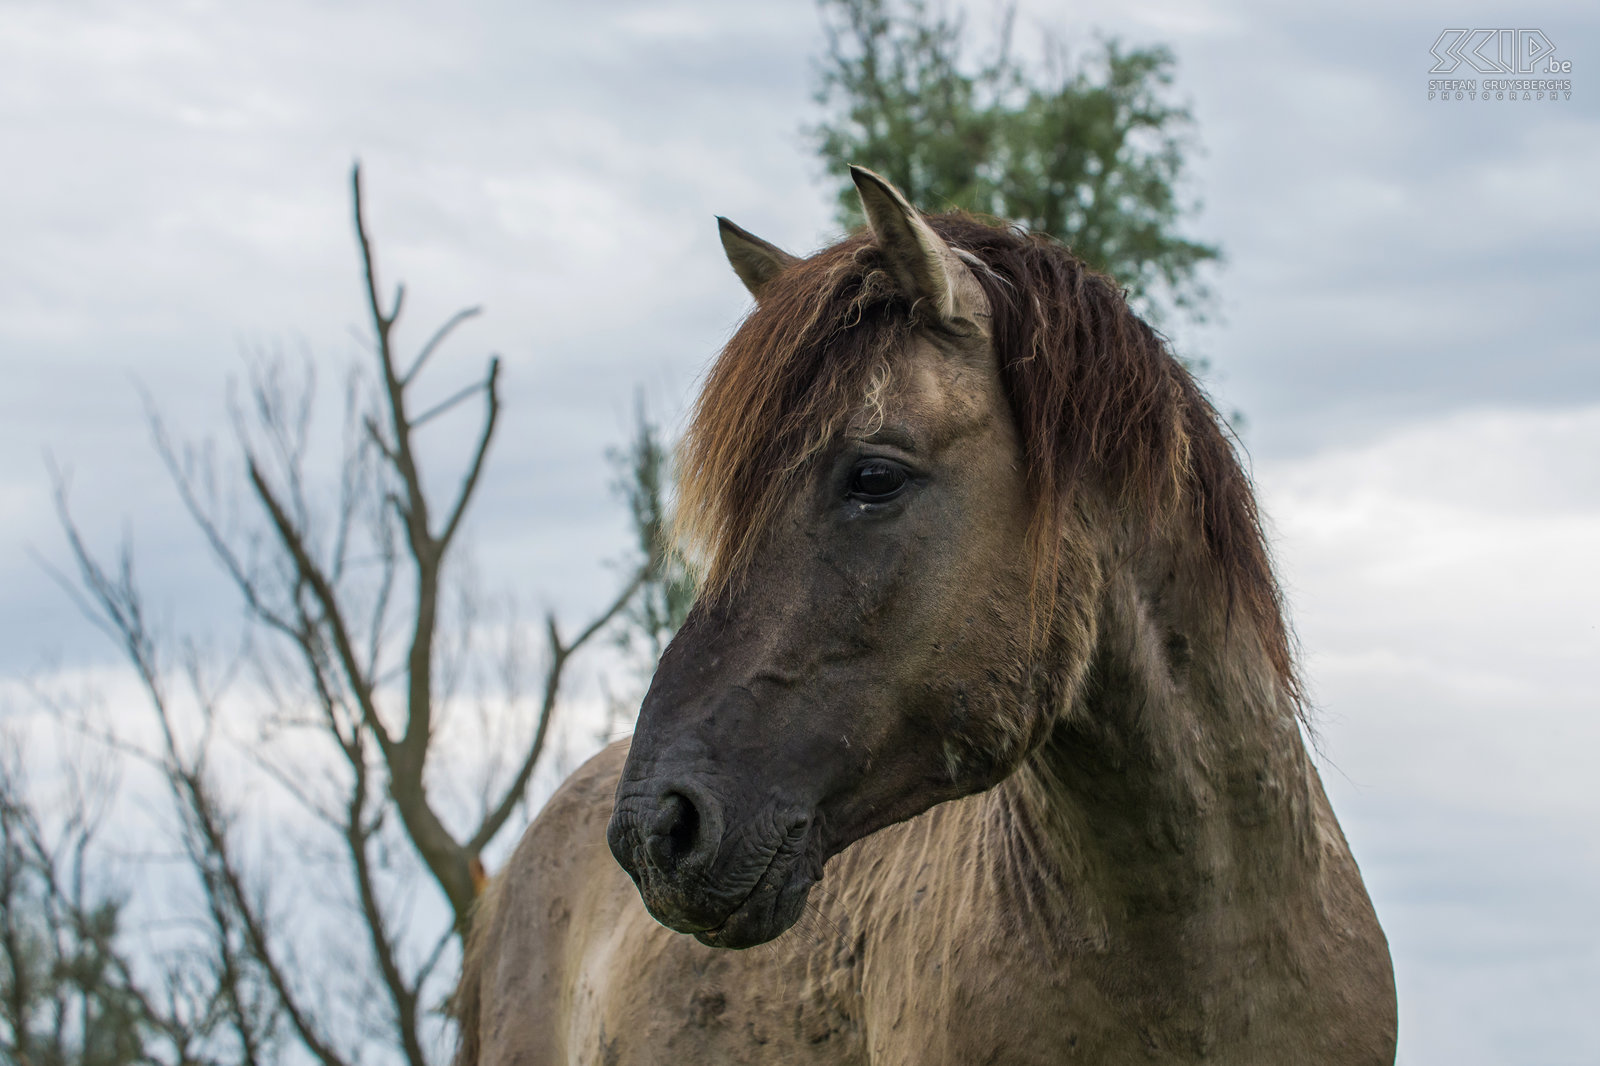 Konik paarden - Oostvaardersplassen De Oostvaardersplassen in Flevoland is het grootste nationale park in Nederland. Het is een groot moerasgebied met rietvlaktes, ruige graslanden en waterplassen waar duizenden vogels zoals ganzen, lepelaars, aalscholvers, reigers, ... vertoeven. 25 jaar geleden werden er ook edelherten, heckrunderen en konik paarden uitgezet. Nu leven er ongeveer 1000 wilde paarden, de grootste populatie in Europa. De konik is van oorsprong een Pools en Wit-Russisch klein wild paard. Ze leven in grote groepen met veel veulens en er is vaak veel interactie en zelfs gevechten. Het is fantastisch om tussen de vele paarden te kunnen vertoeven. Stefan Cruysberghs